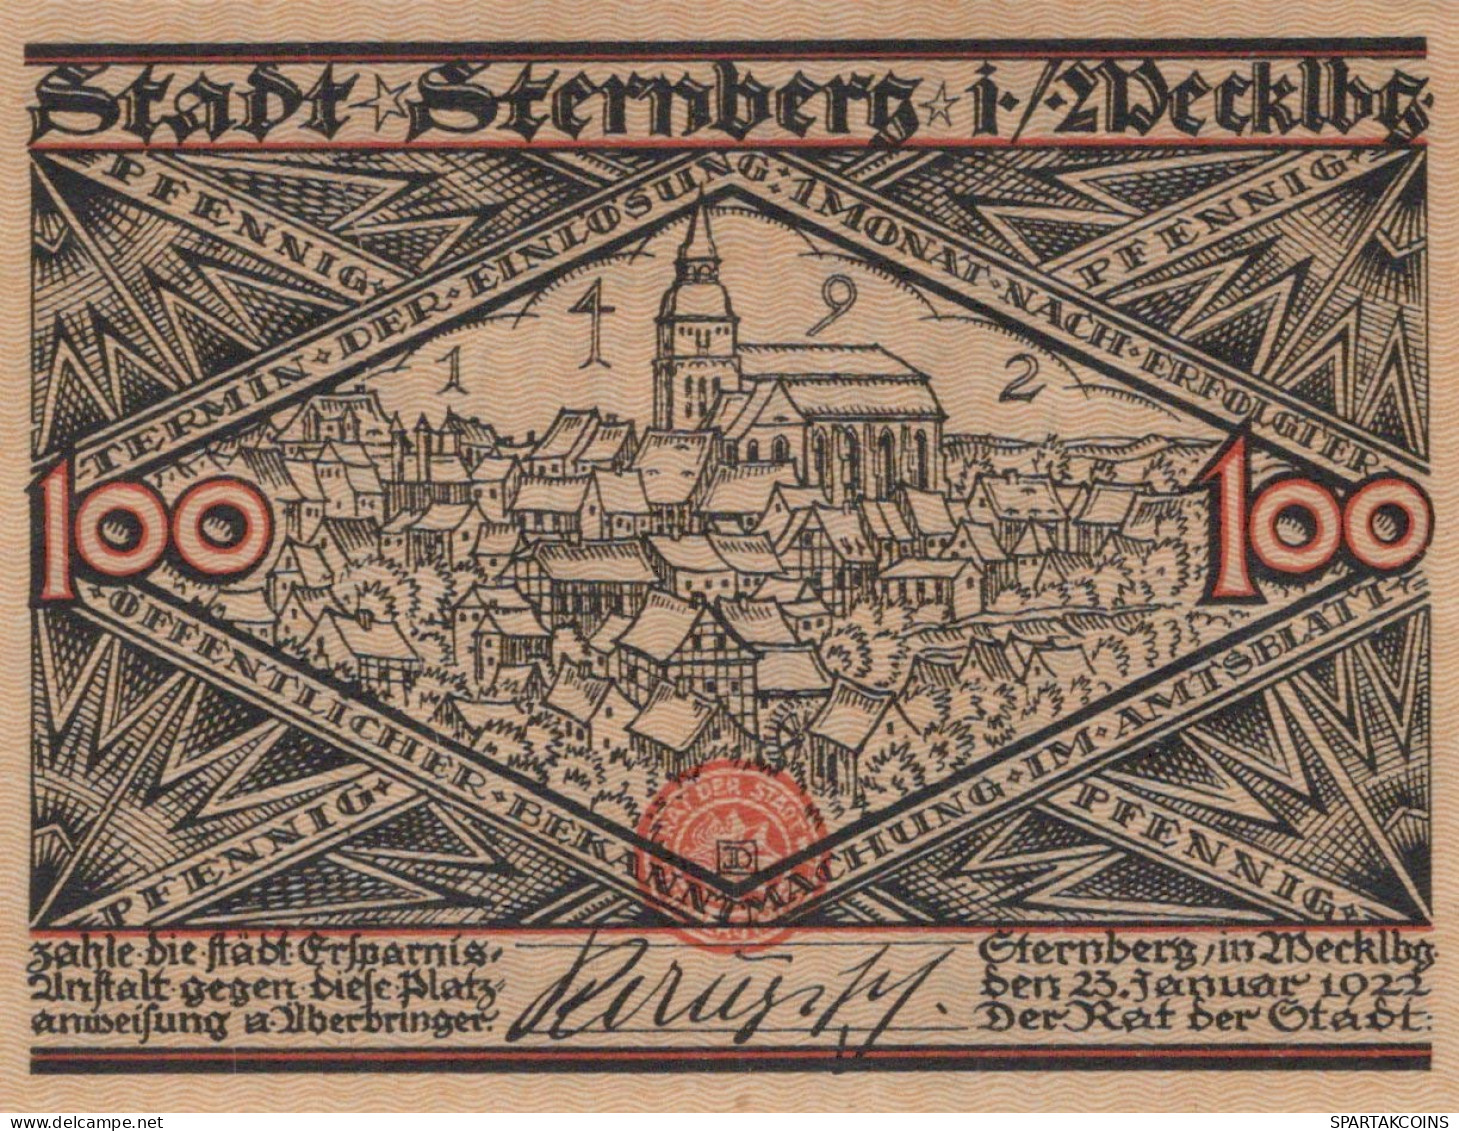 100 PFENNIG 1922 Stadt STERNBERG Mecklenburg-Schwerin UNC DEUTSCHLAND #PJ012 - [11] Local Banknote Issues